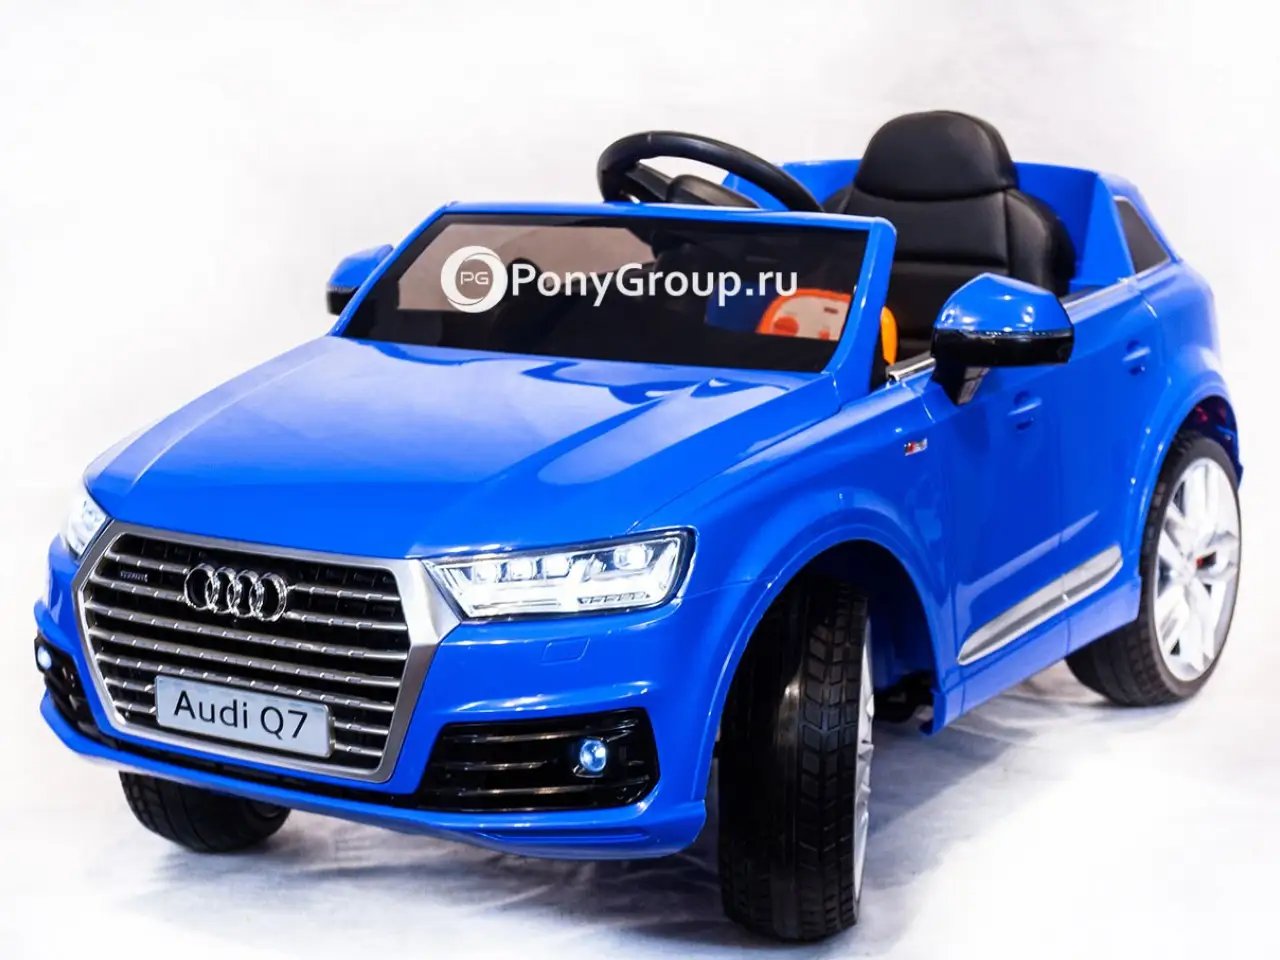 Машинка для детей 8 лет. Электромобиль Ауди q7 синяя. Детский электромобиль Audi q7. Электромобиль Audi q8, свет, звук, 2x6v7ah, PP, 108x66x55см 834-014. Ауди ку 7 электромобиль.